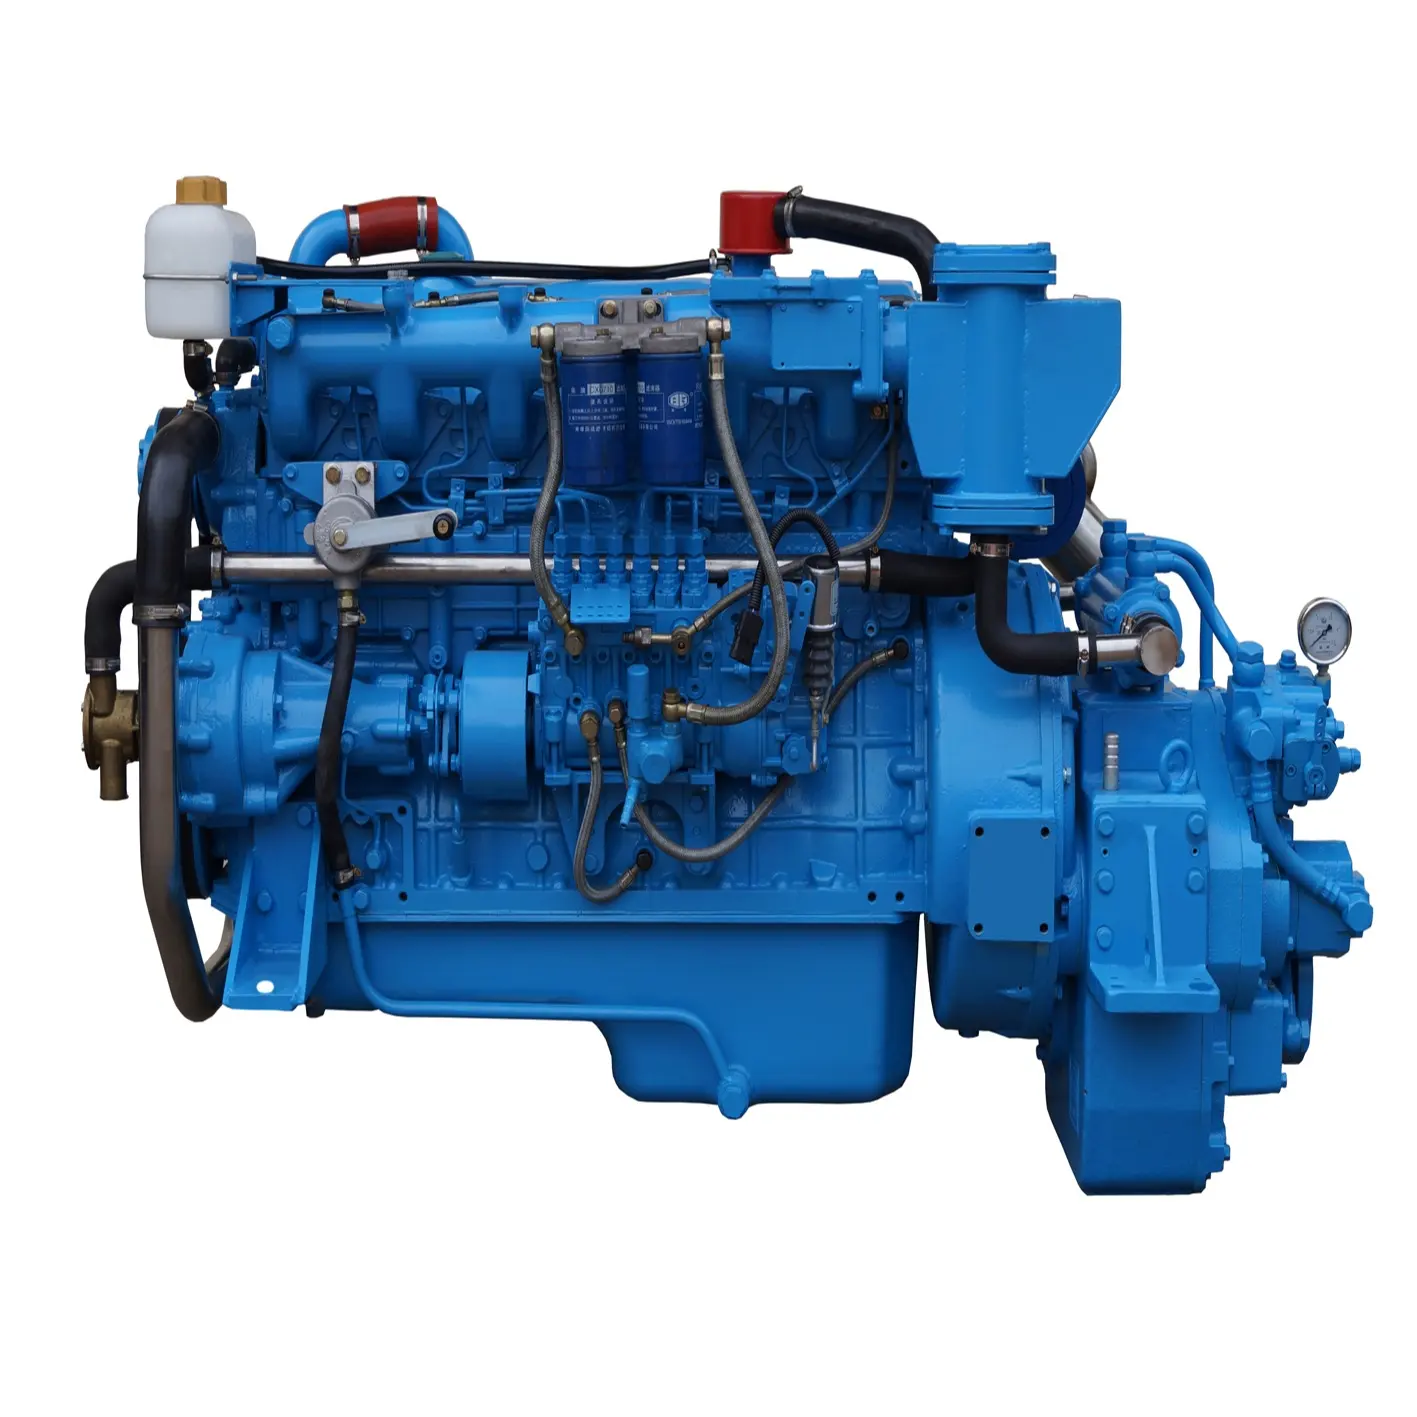 Deniz dizel motor TDME-6112TI 6 silindir 200HP güç tekne şanzıman 120C